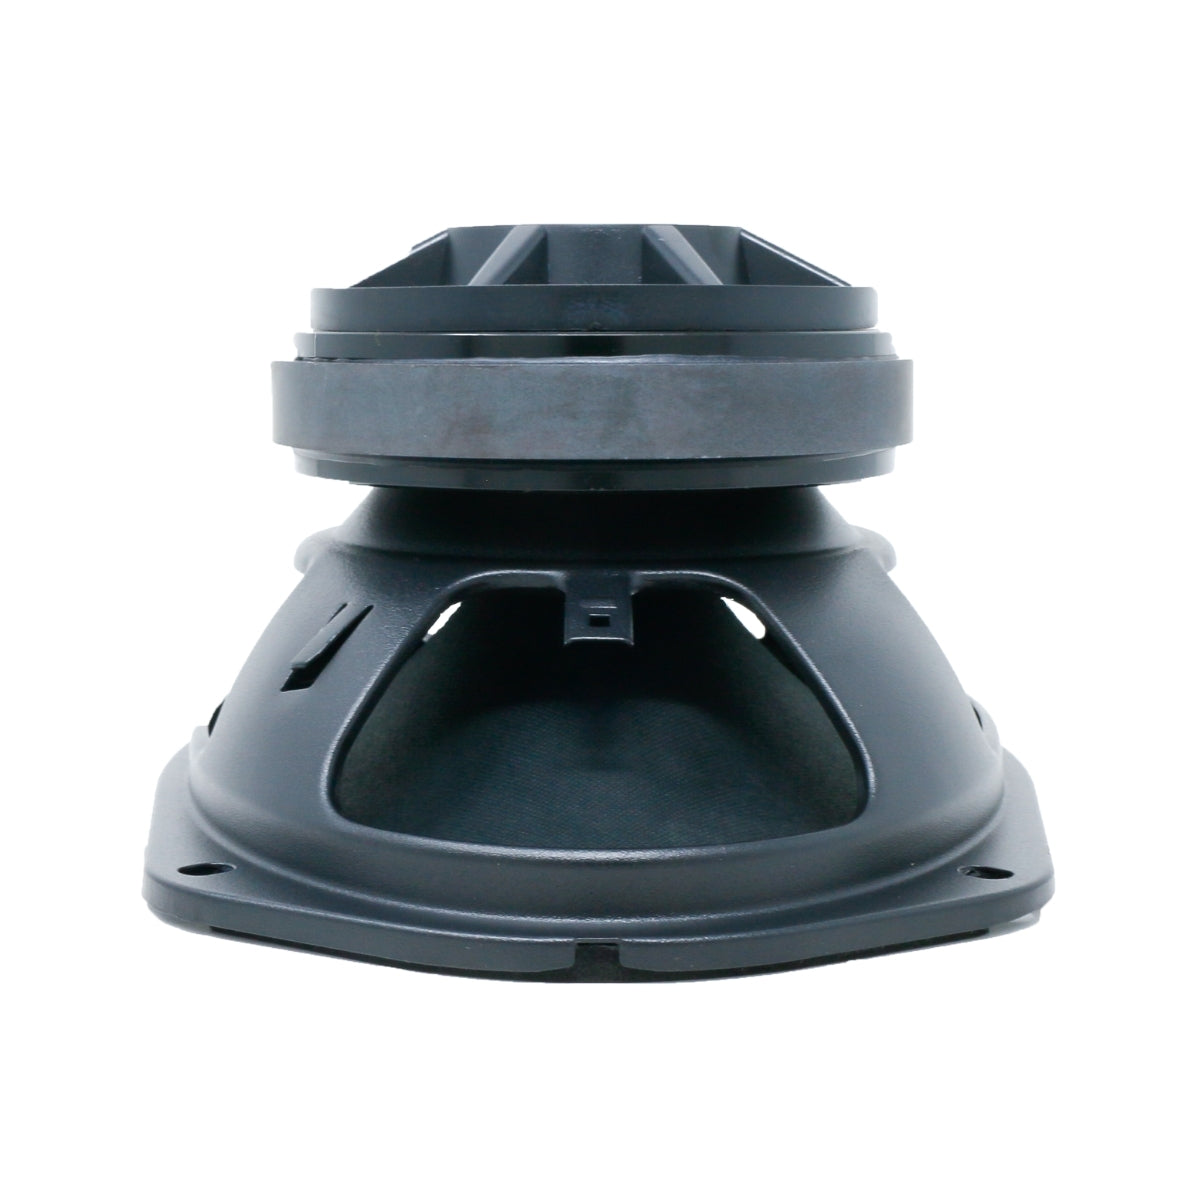 6"x9" Pro Full-Range Coax Horn Speakers 4Ω - PH694